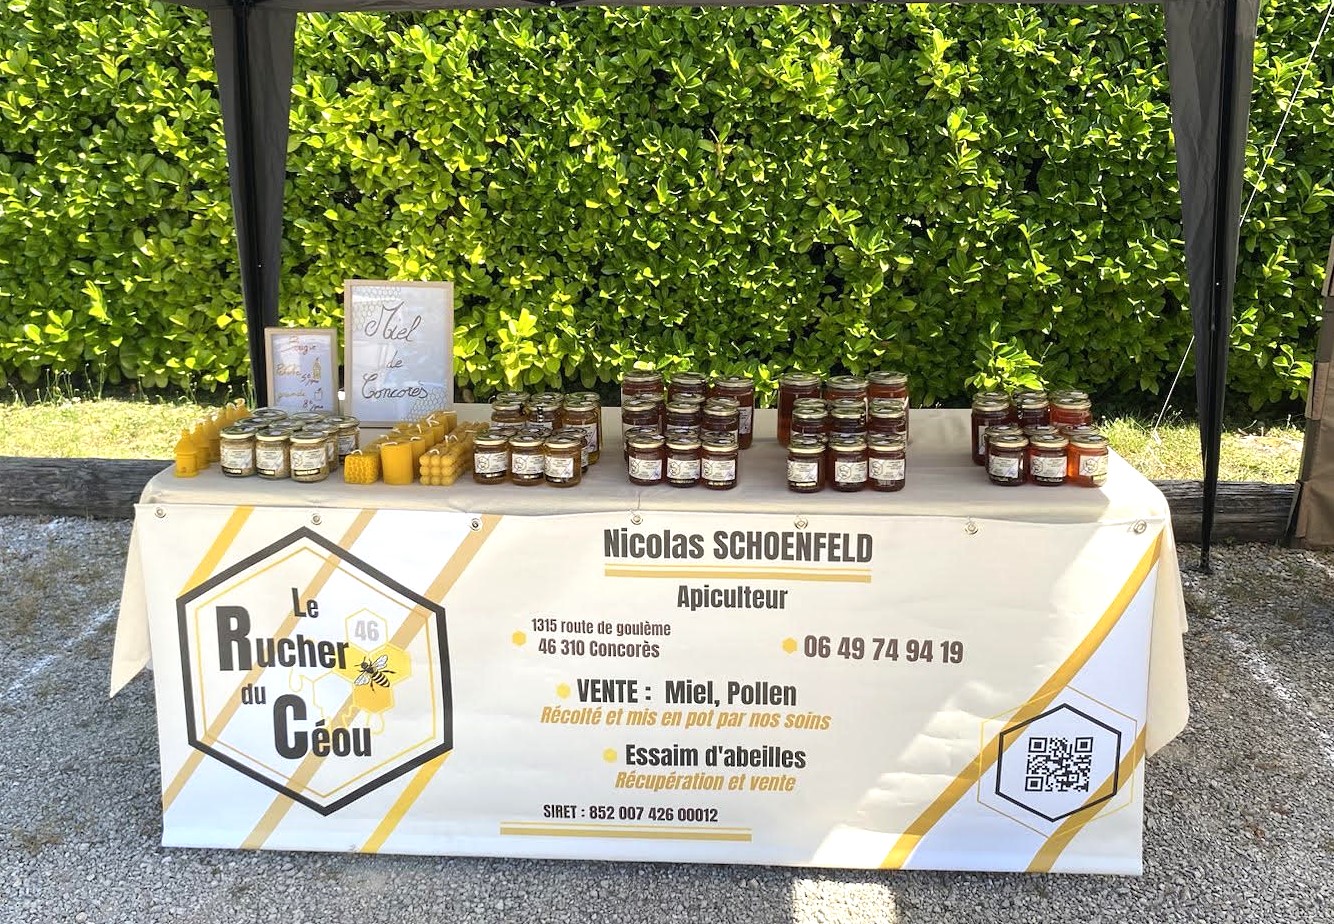 Le Rucher du Céou - production et vente directe de miel, pollen et essaim d'abeilles - à Concorès et Gourdon.